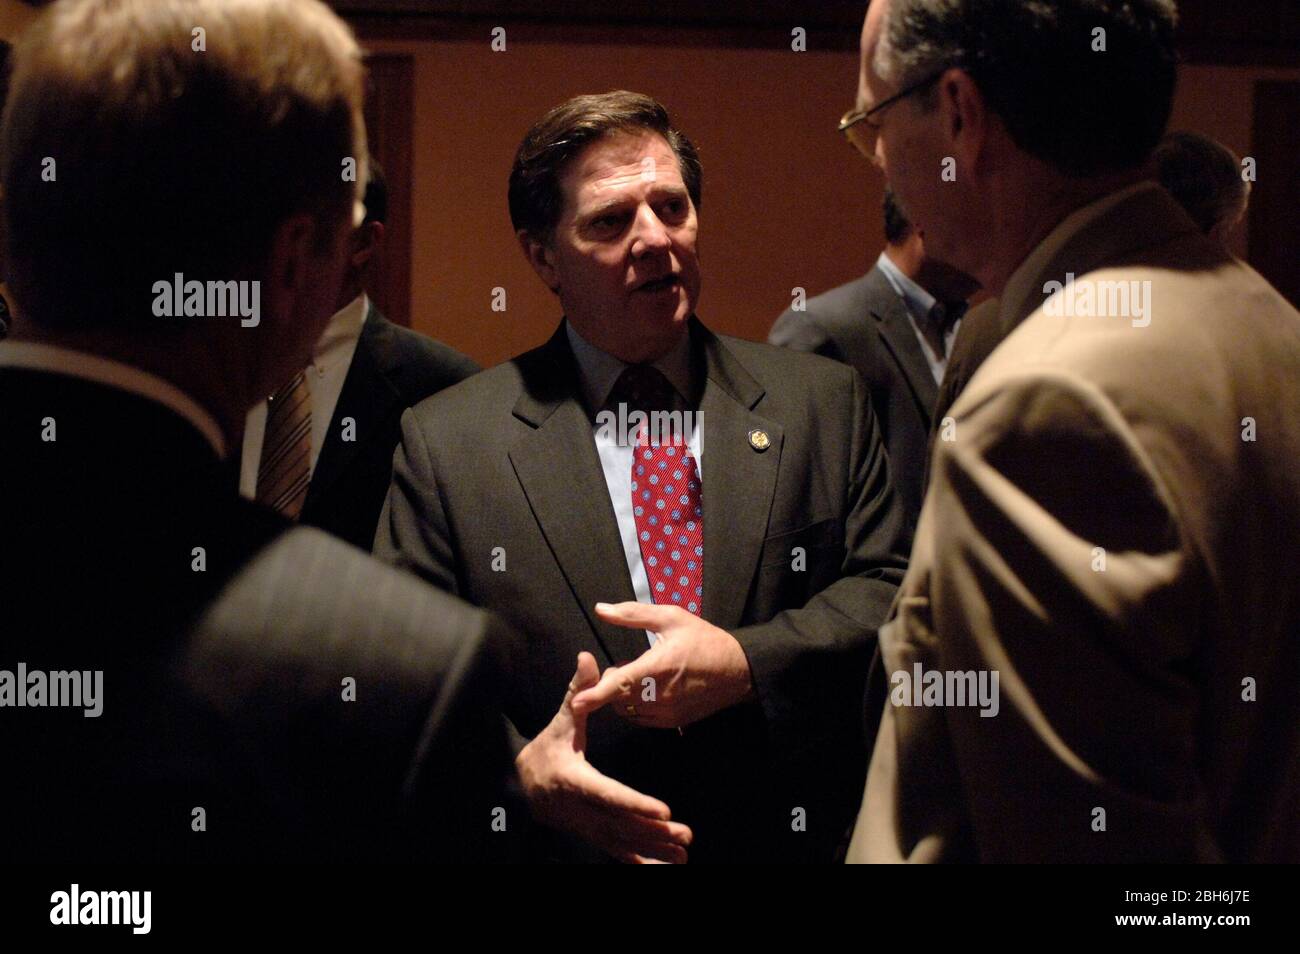 Midland, Texas États-Unis, 14 octobre 2005: Tom Delay, ancien membre du Congrès américain, salue ses partisans lors d'un déjeuner pour recueillir de l'argent pour son fonds de défense juridique. ©Bob Daemmrich Banque D'Images